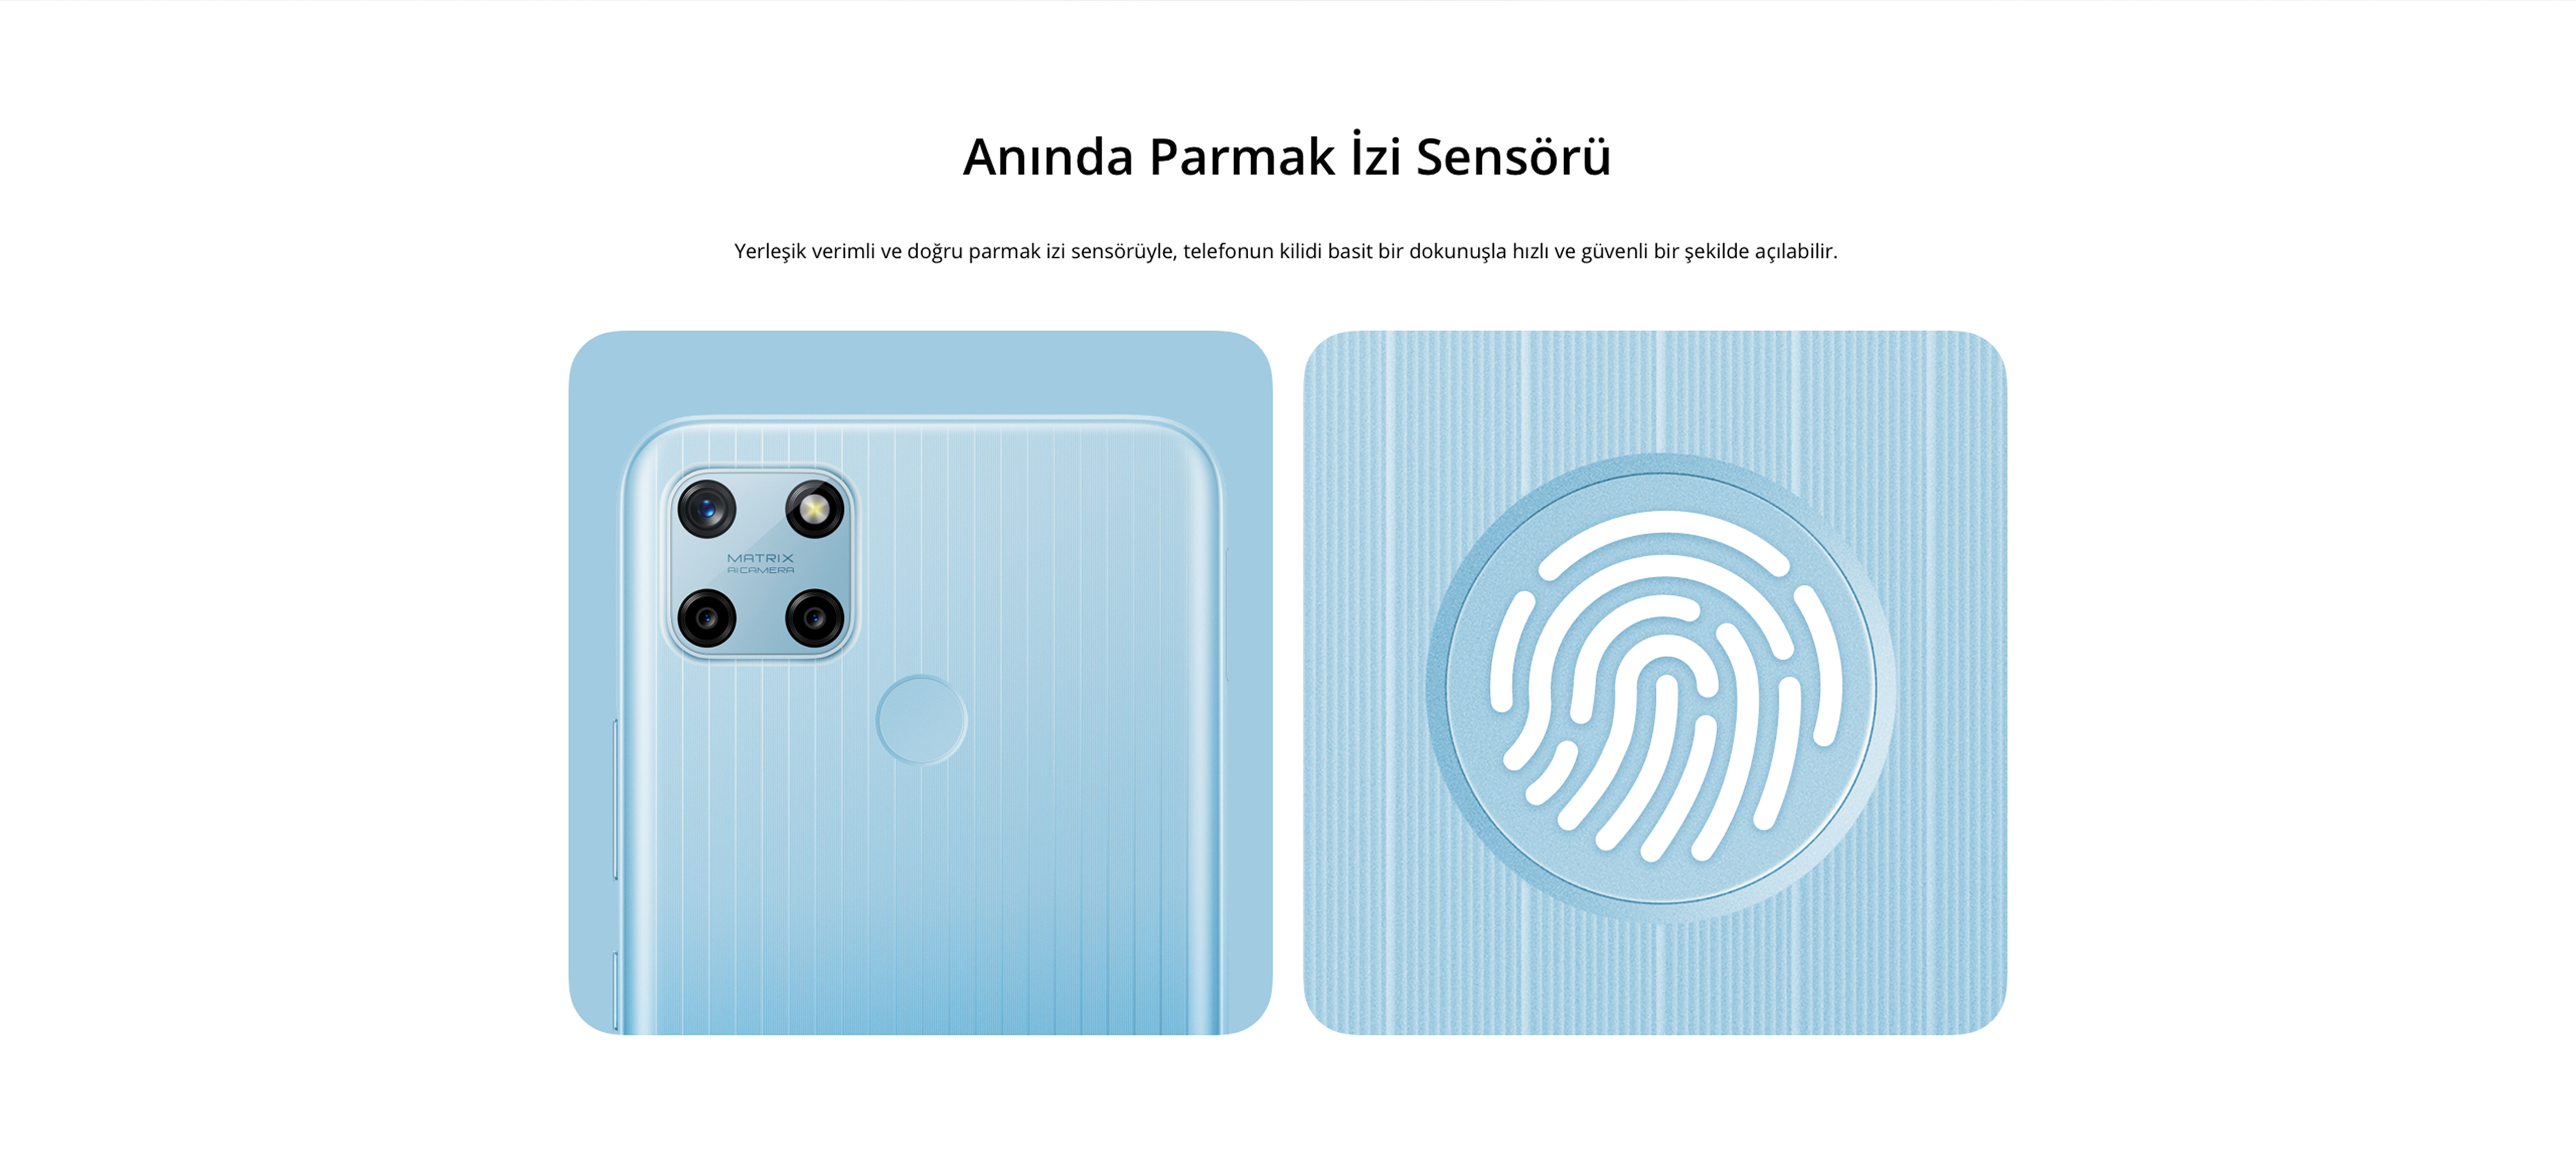 Anında Parmak İzi Sensörü Yerleşik verimli ve doğru parmak izi sensörüyle, telefonun kilidi basit bir dokunuşla hızlı ve güvenli bir şekilde açılabilir.